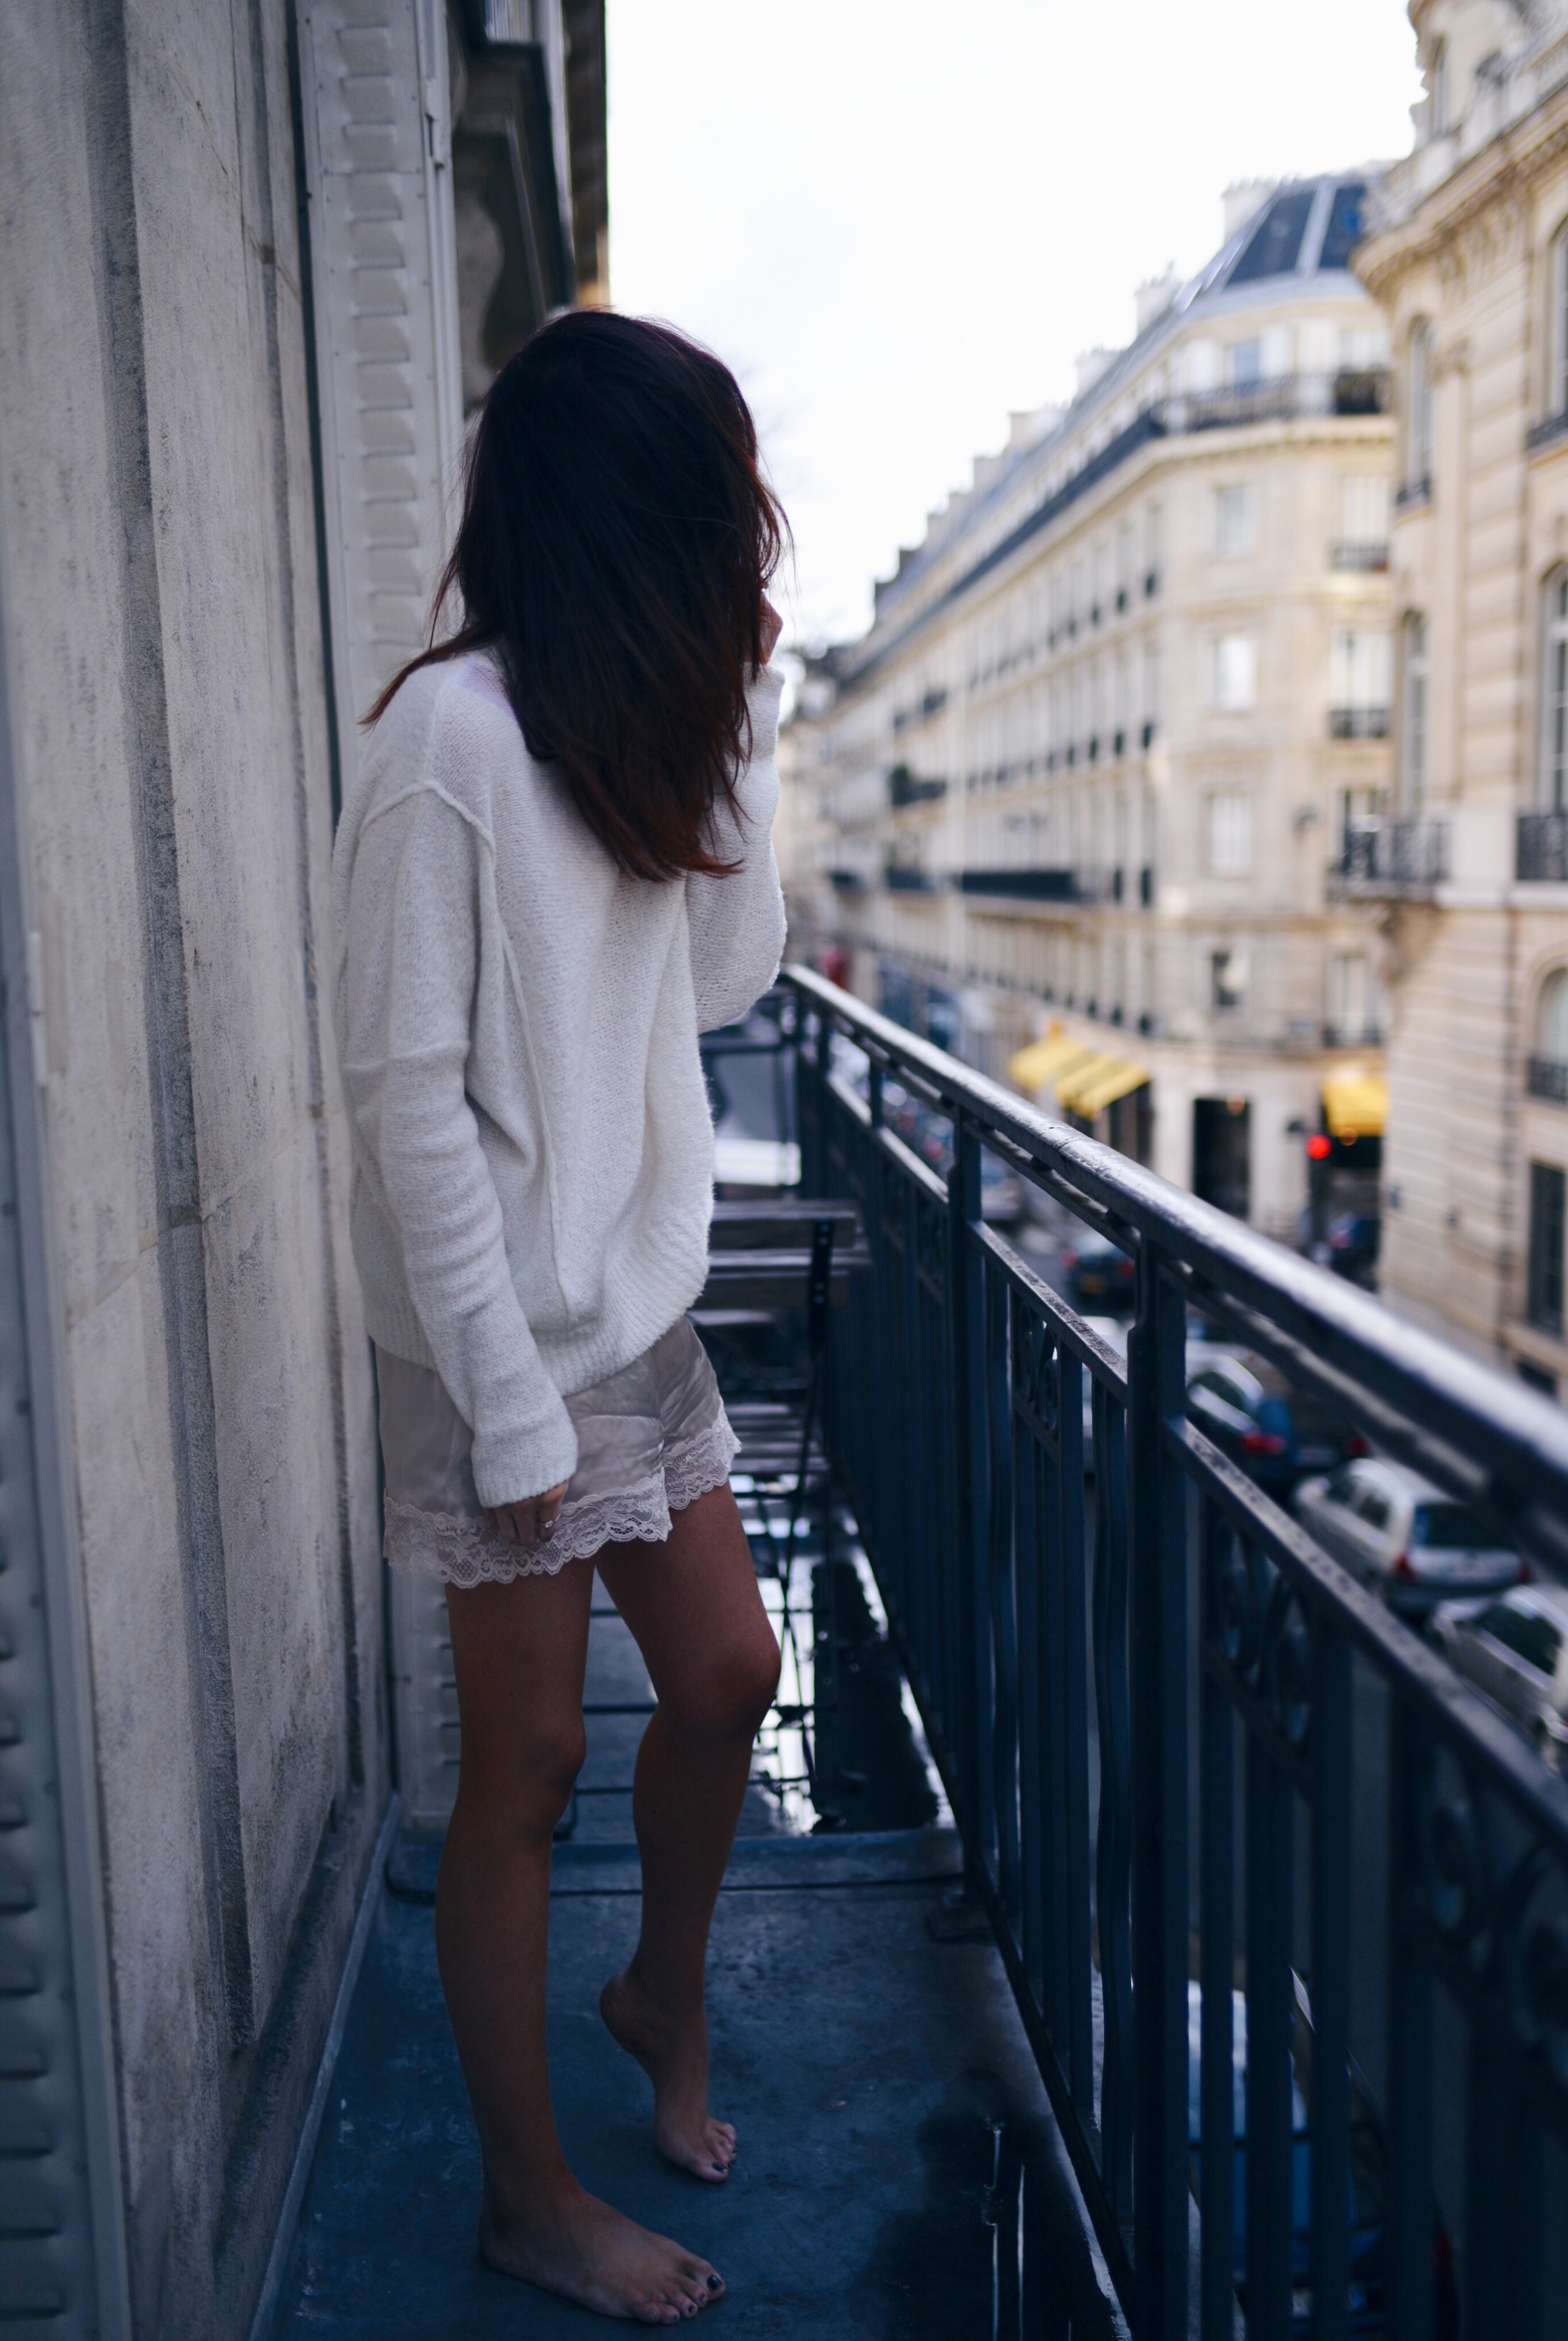 parisian-balcony-view